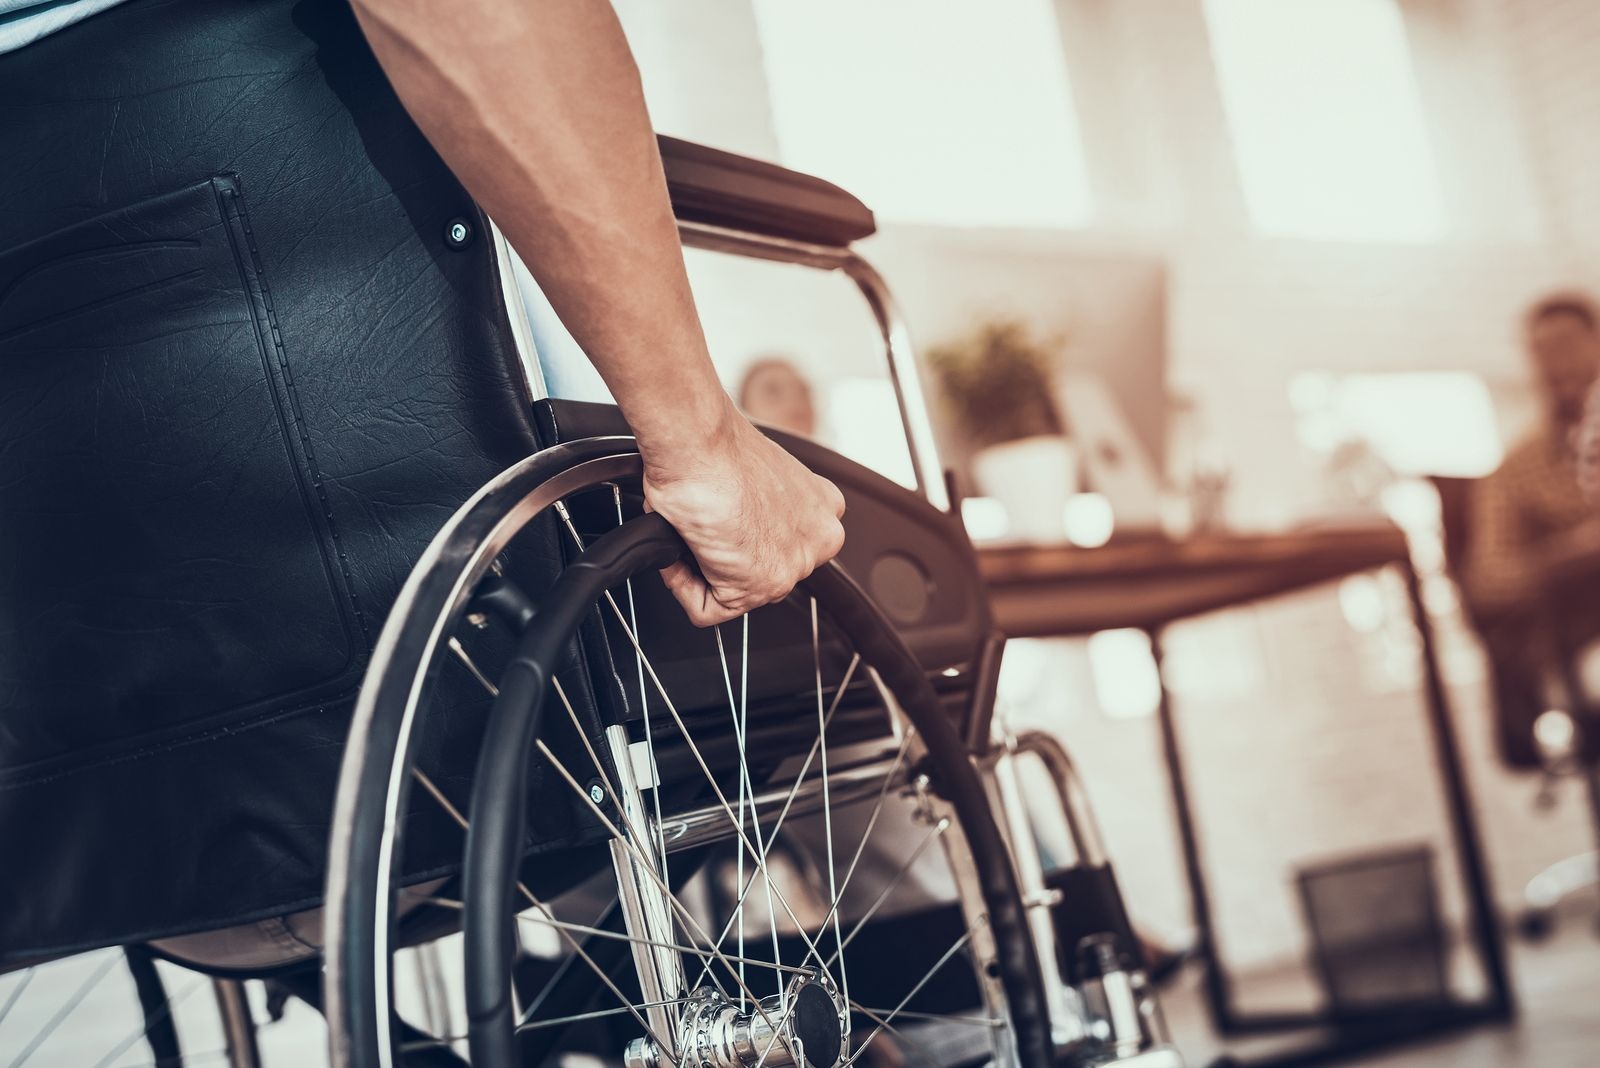 Personas con discapacidad serán geolocalizadas para acceder a terapias